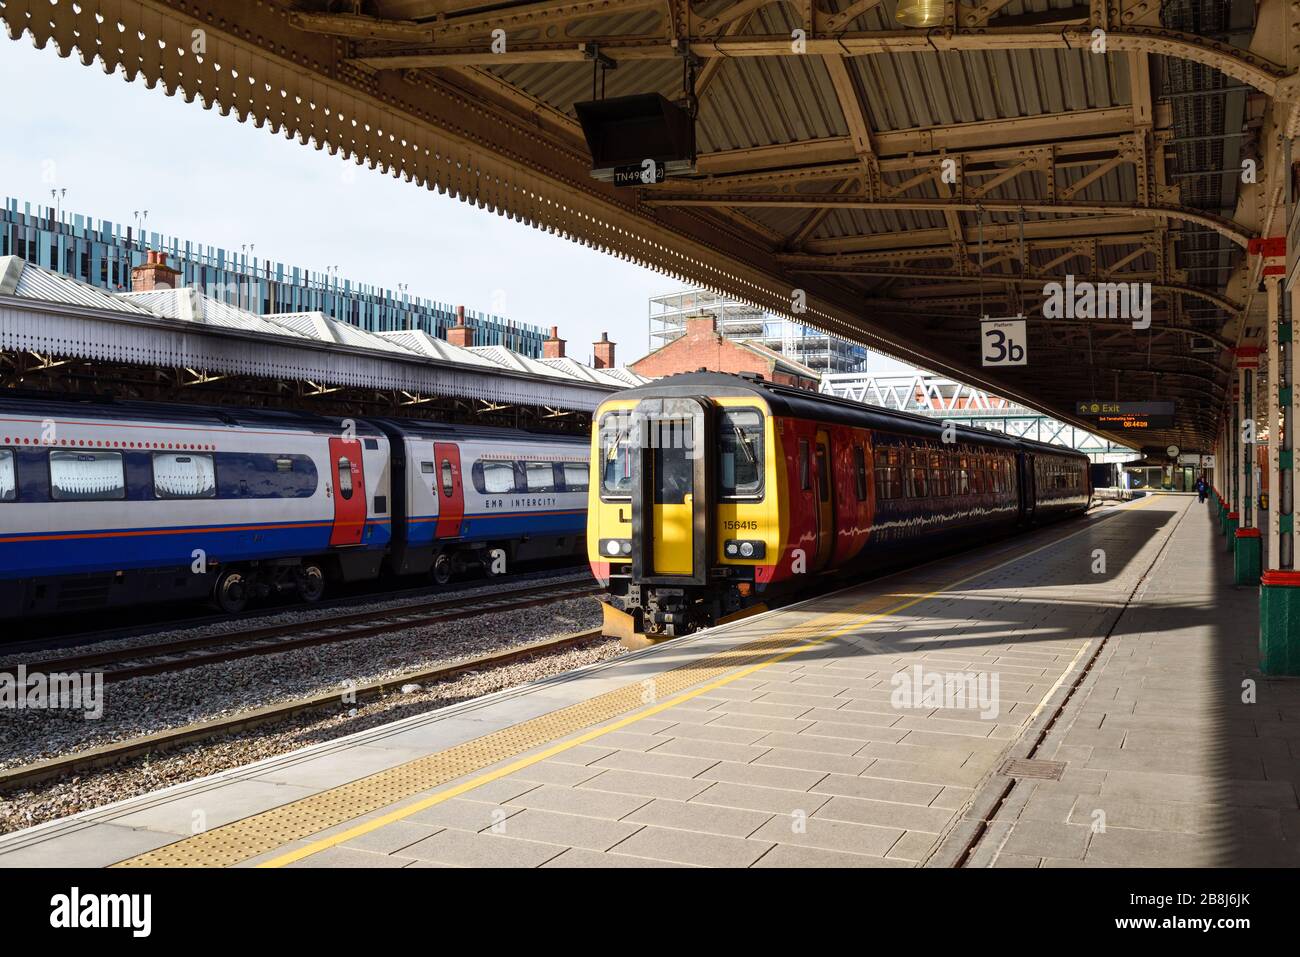 Nottingham East Midlands Train Station, UK. Stock Photo